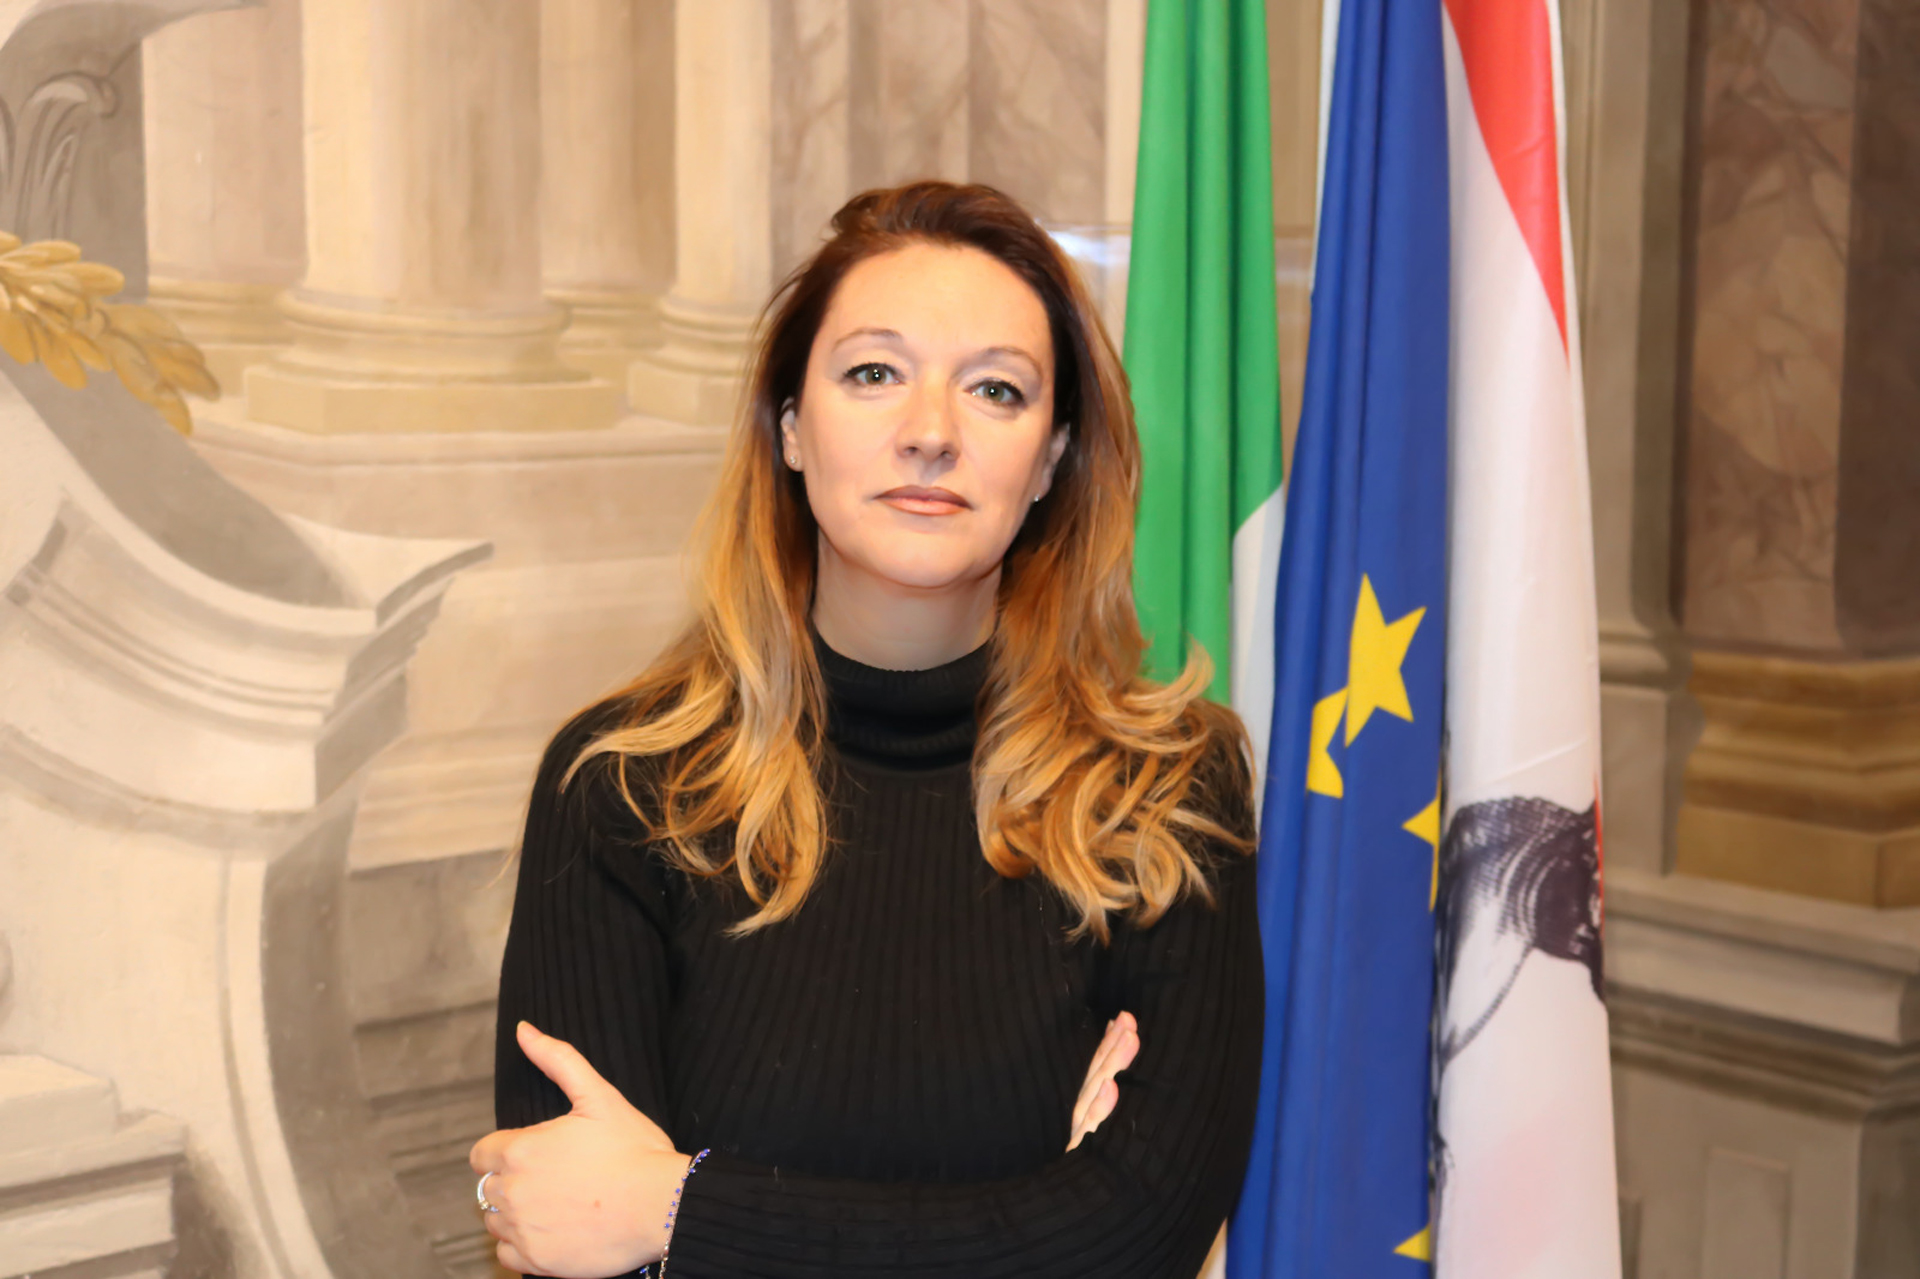 Salario minimo, Bugetti e Ceccarelli (Pd): “La Toscana si mobiliti contro l’emendamento soppressivo del governo alla proposta di legge delle opposizioni”